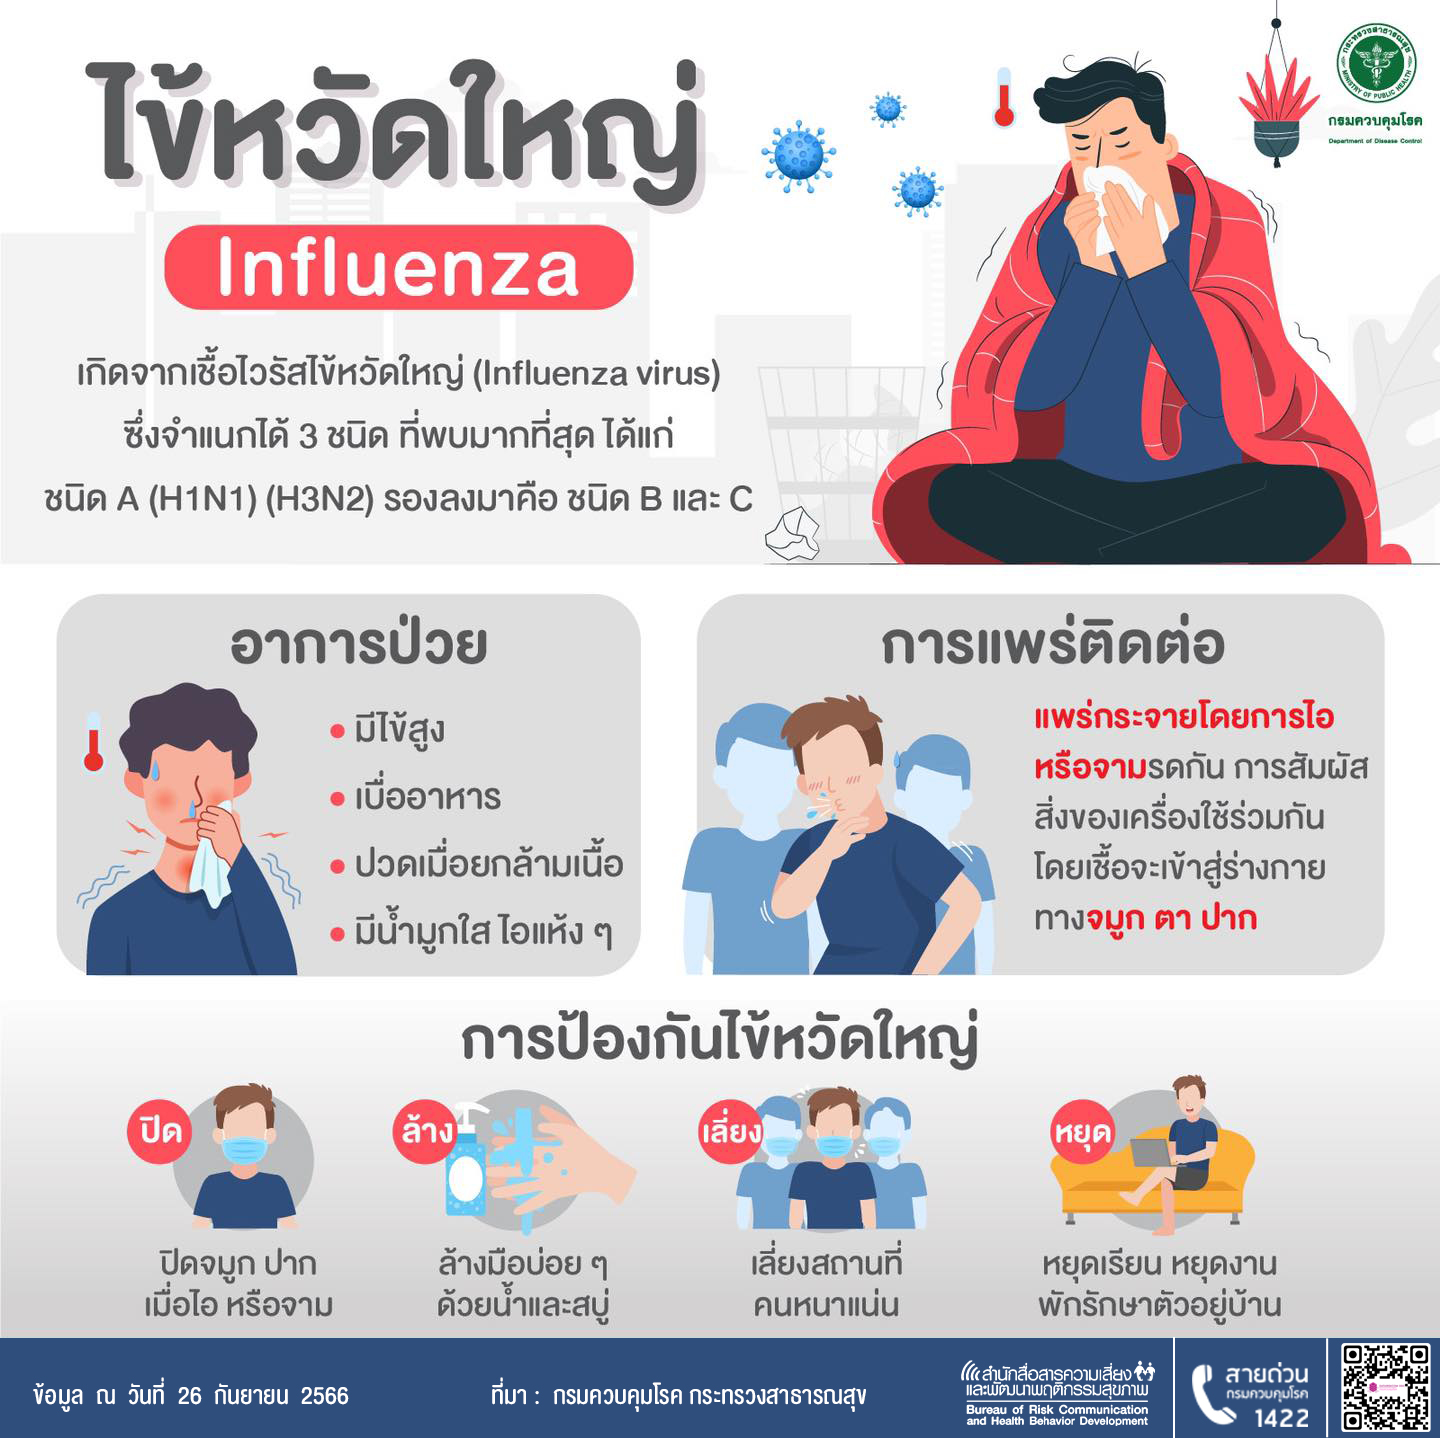 ไข้หวัดใหญ่ Influenza